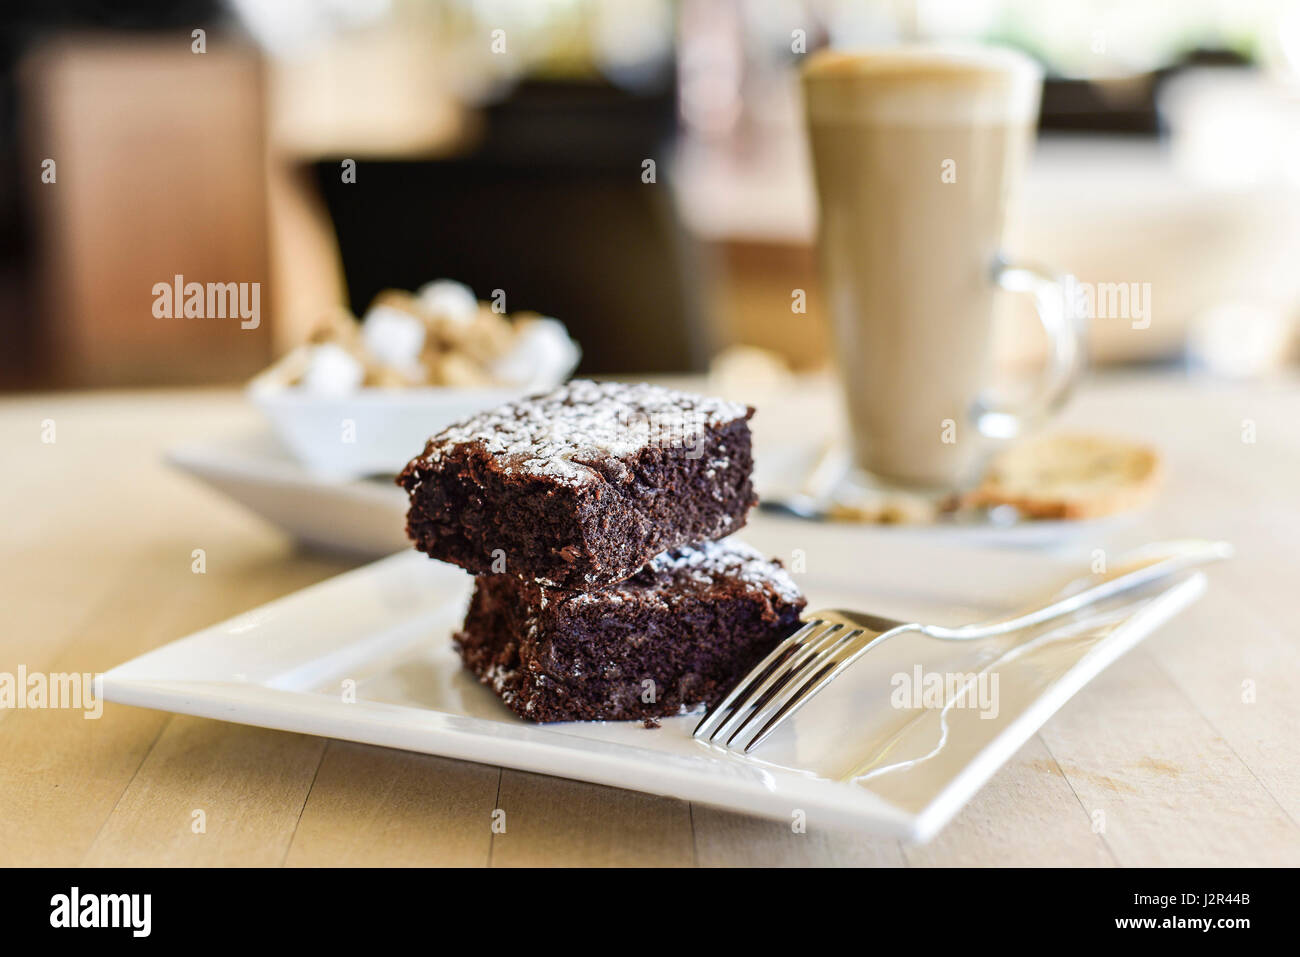 Cibo due Brownie al cioccolato budino Dessert dolce trattare brownie al cioccolato cotto al forno di cottura piastra forcella Foto Stock